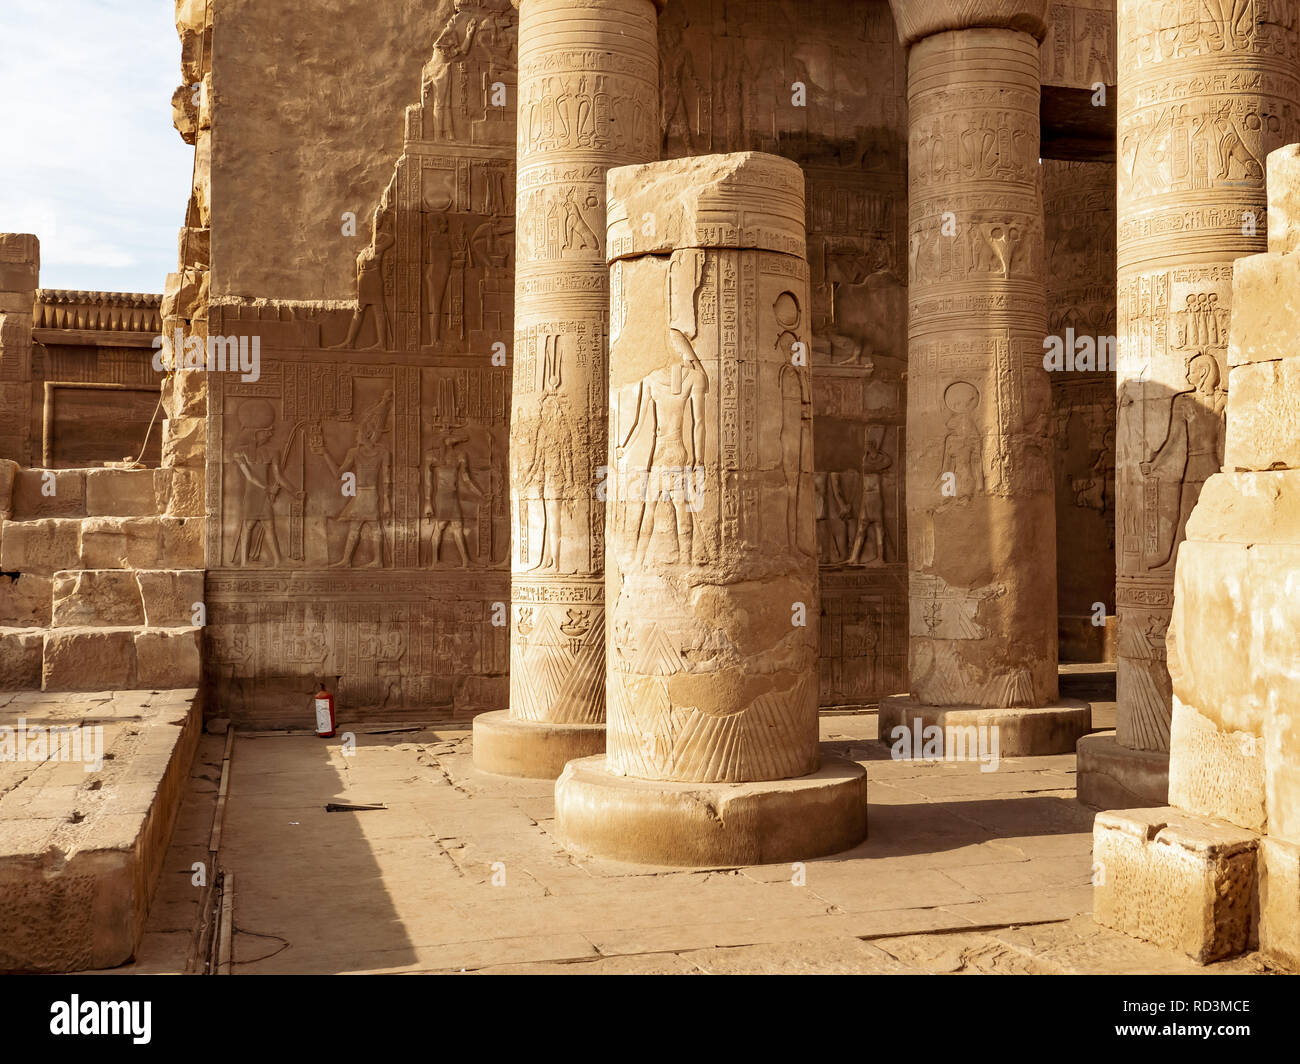 Ruines du temple de Kom Ombo dédié au dieu crocodile Sobek à Assouan Egypte Banque D'Images